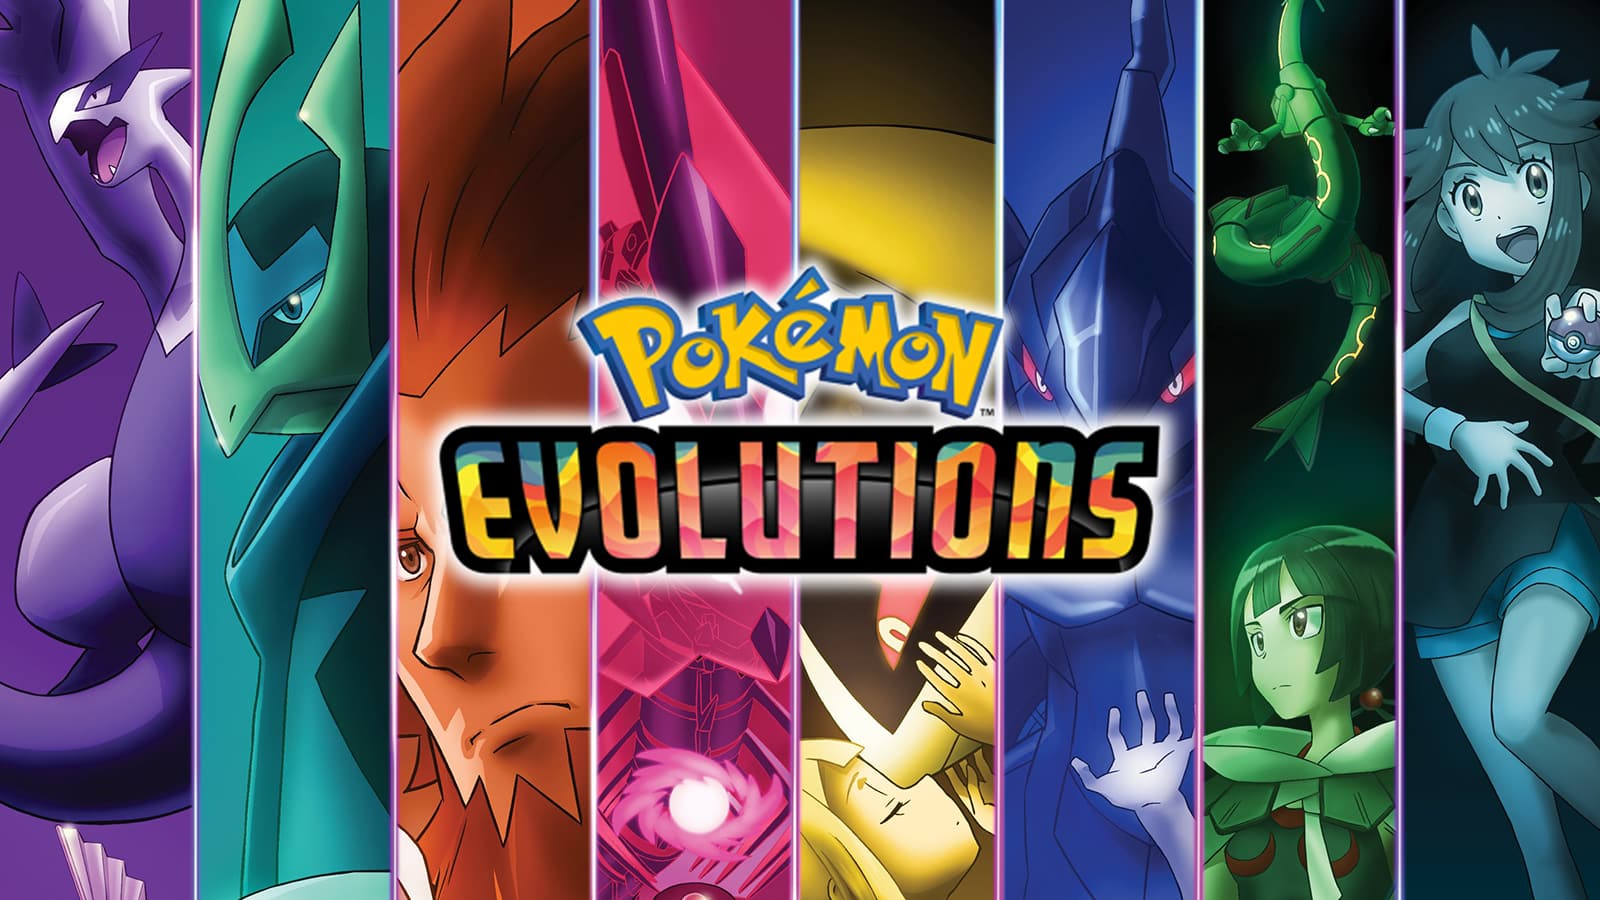 Episode Pertama Pokemon Evolutions Tayang, Hadirkan Leon